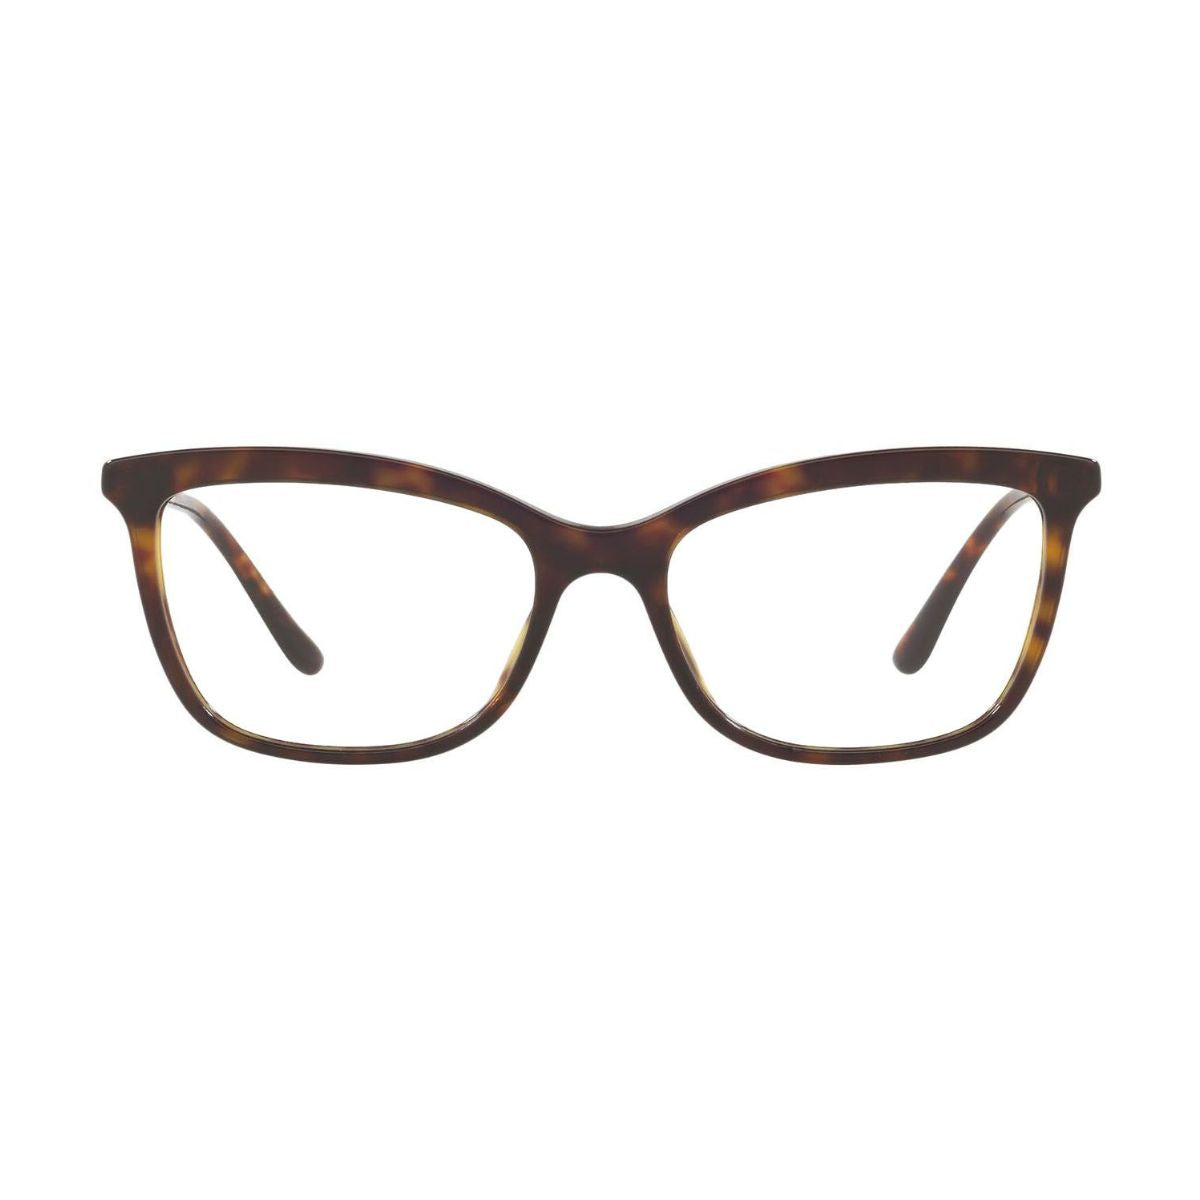 "buy Dolce&Gabbana 3286 502 cat eye glasses frame for women's online at optorium"